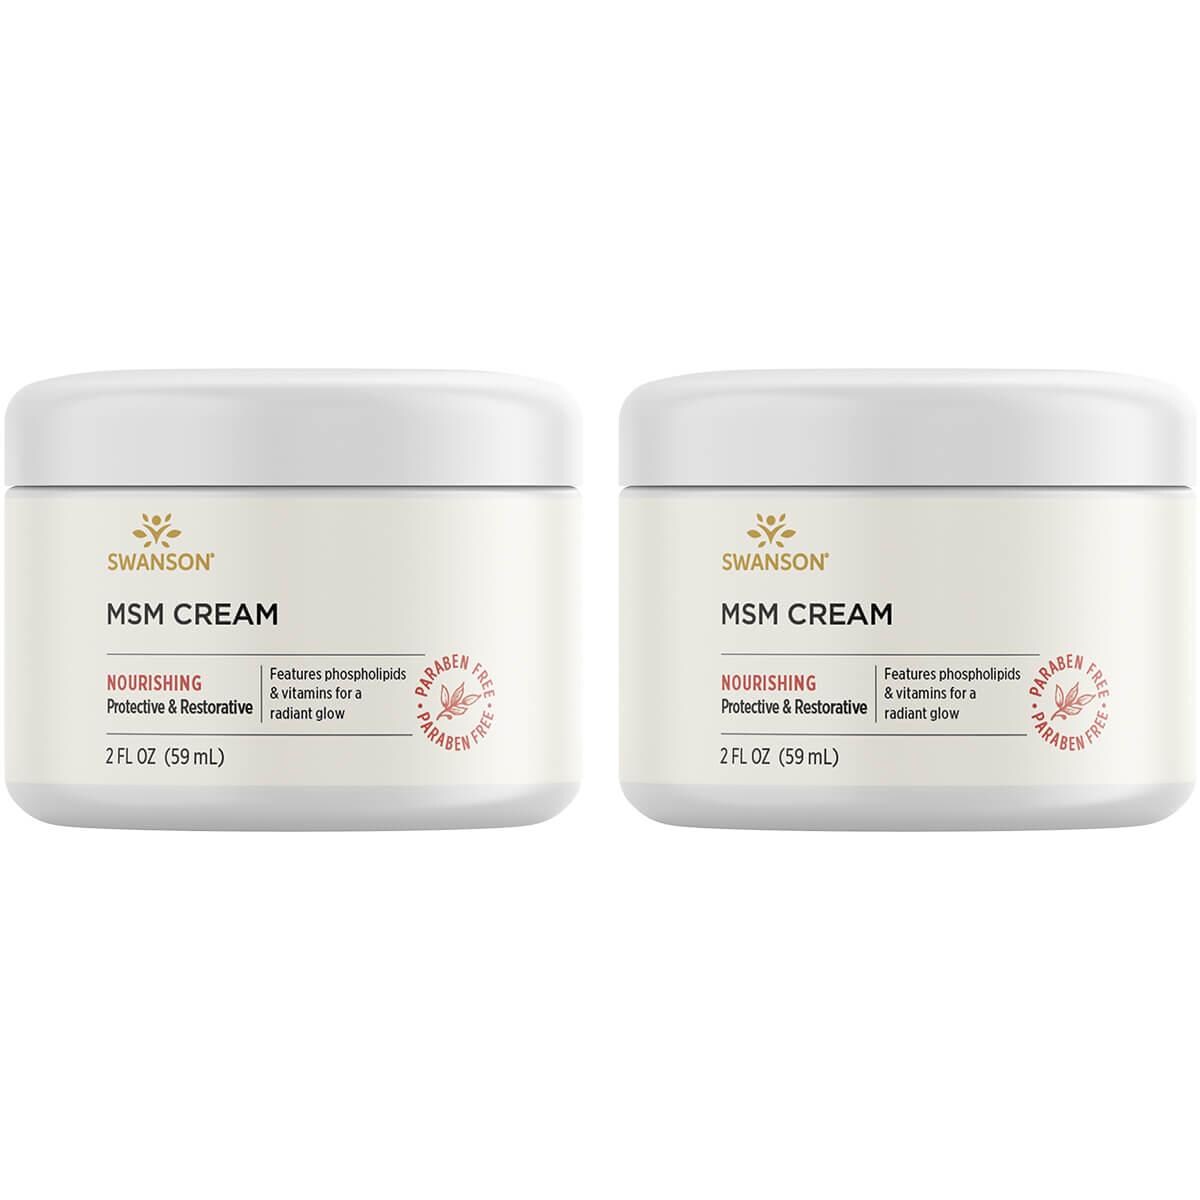 Swanson Premium Msm Cream 2 Pack 2 fl oz Cream